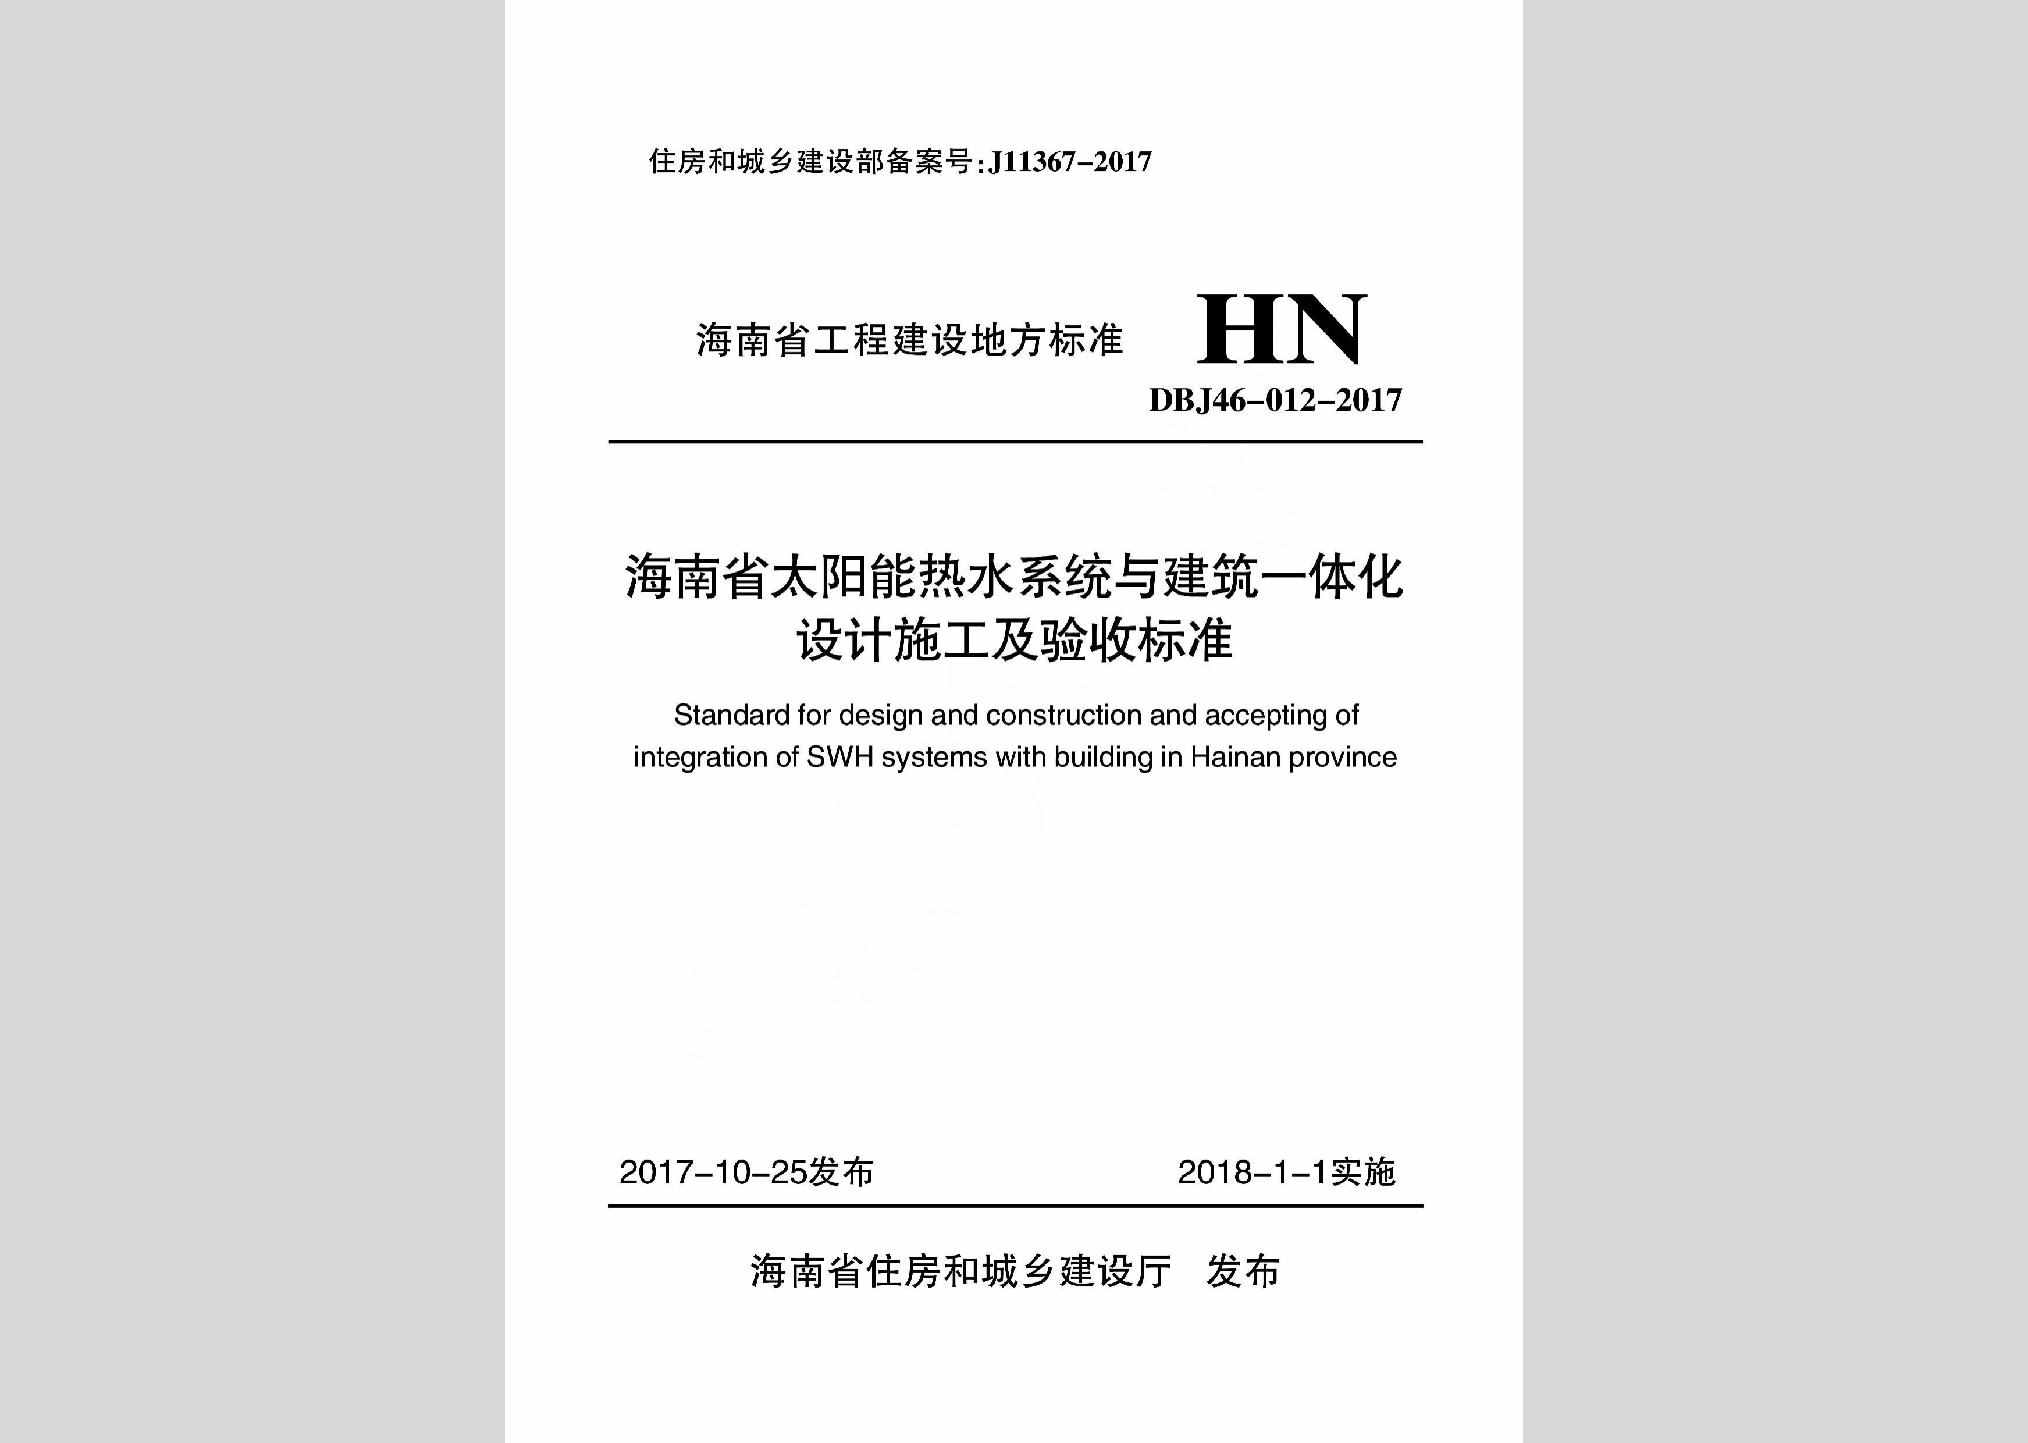 DBJ46-012-2017：海南省太阳能热水系统与建筑一体化设计施工及验收标准